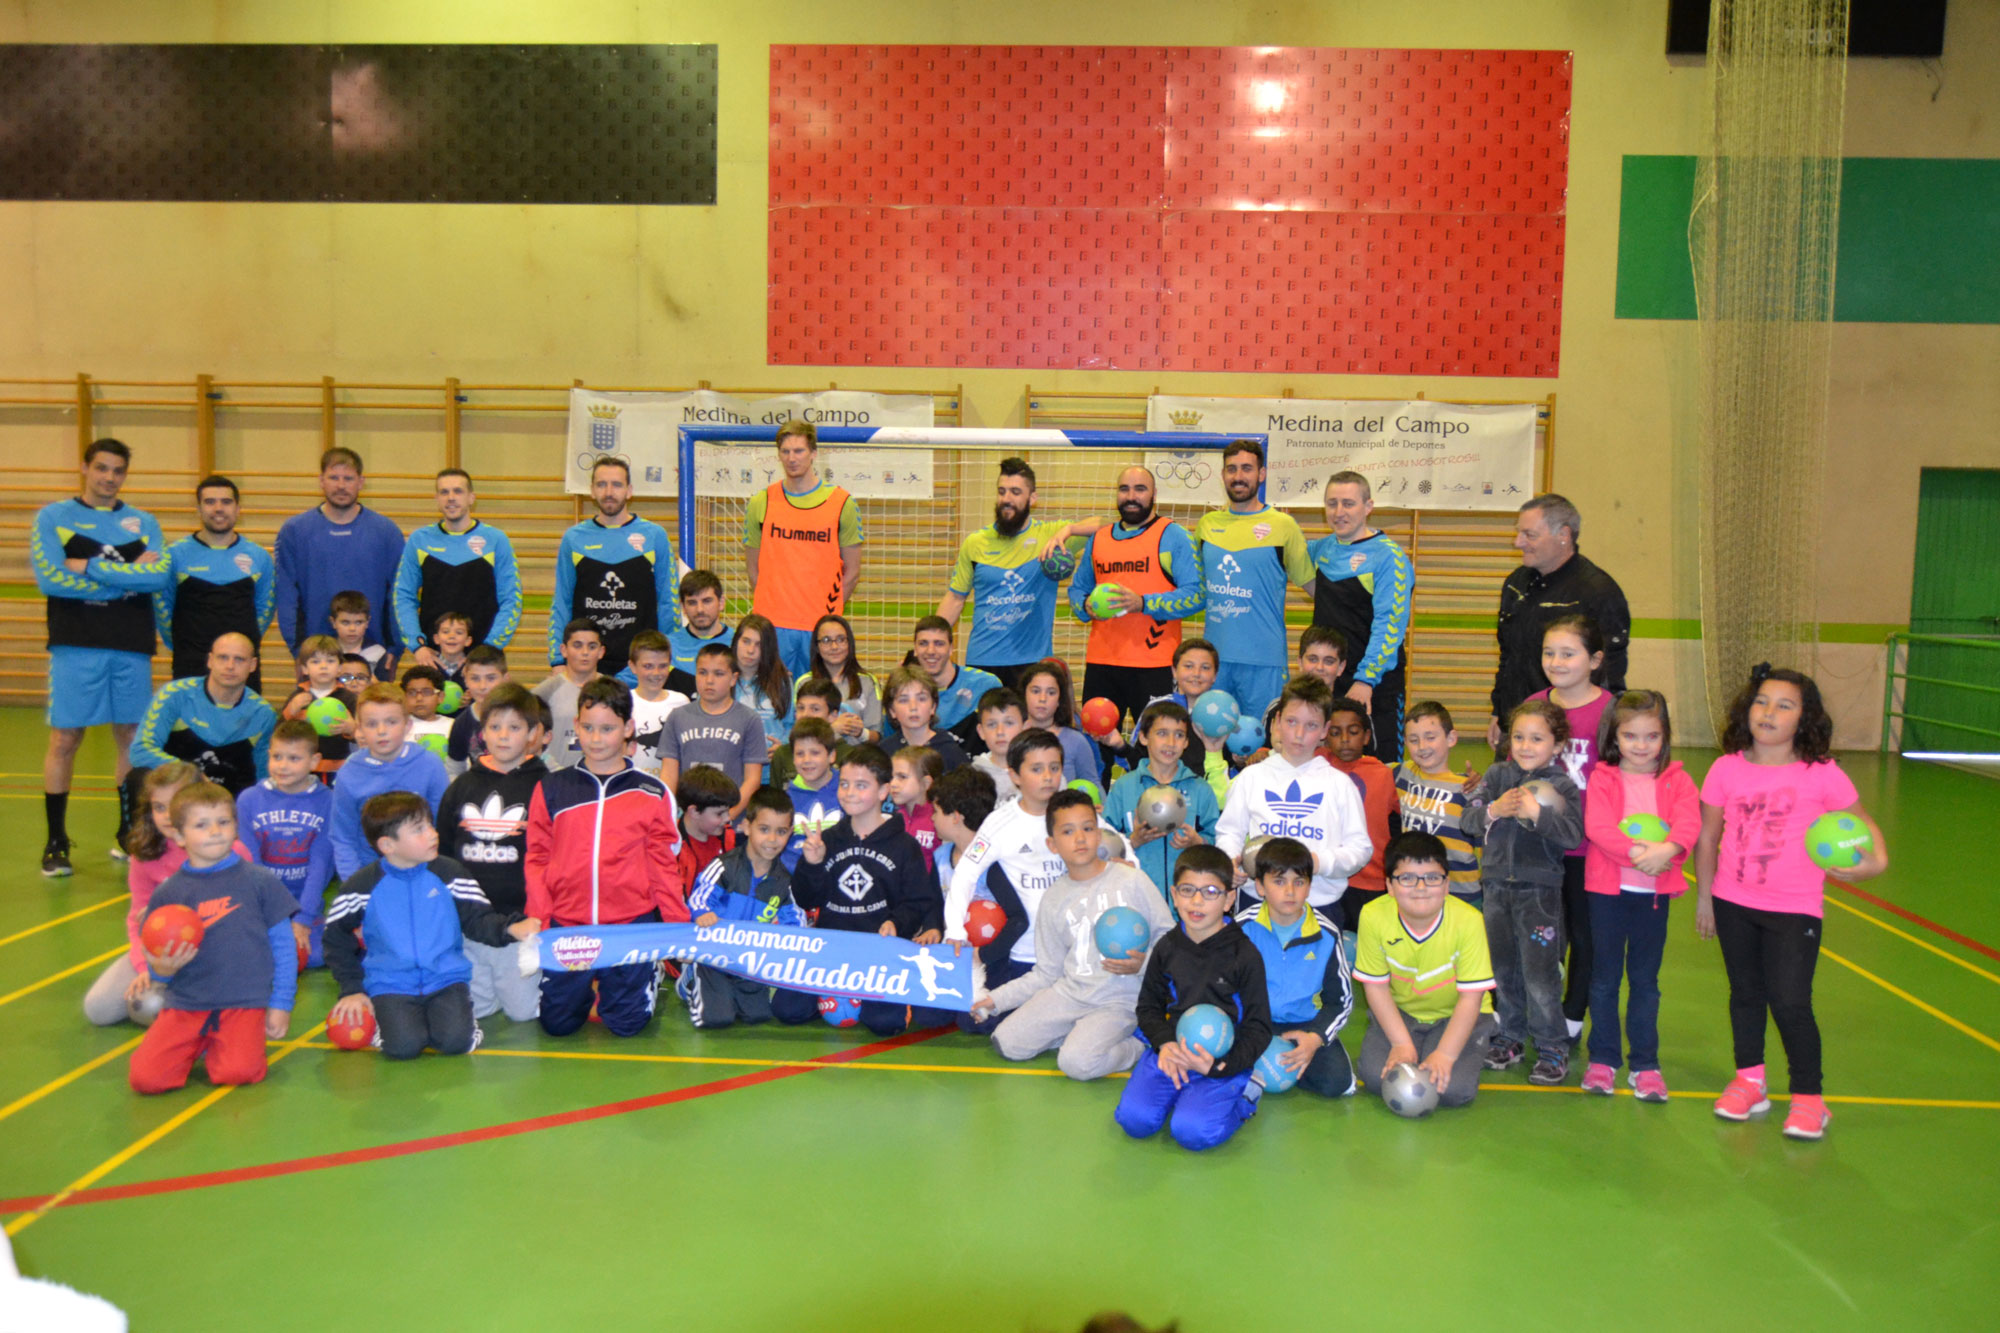 El Atlético Valladolid Recoletas acerca el balonmano a los niños de Medina del Campo